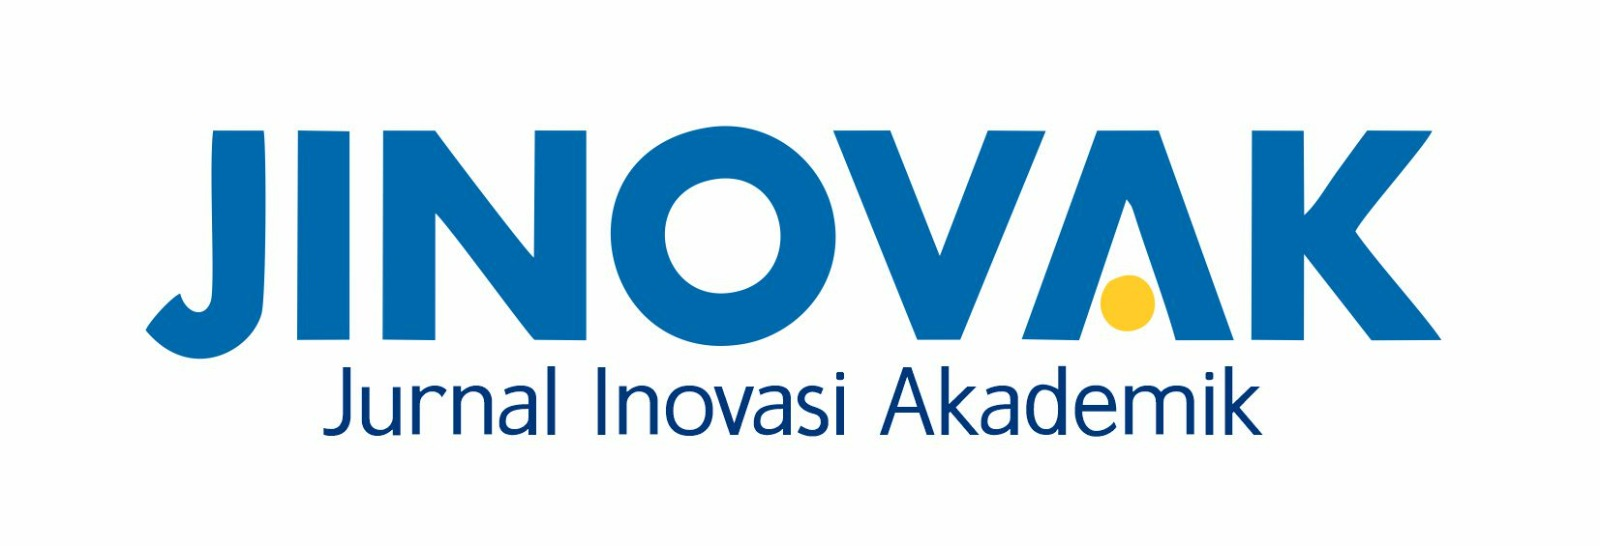 Logo JINOVAK